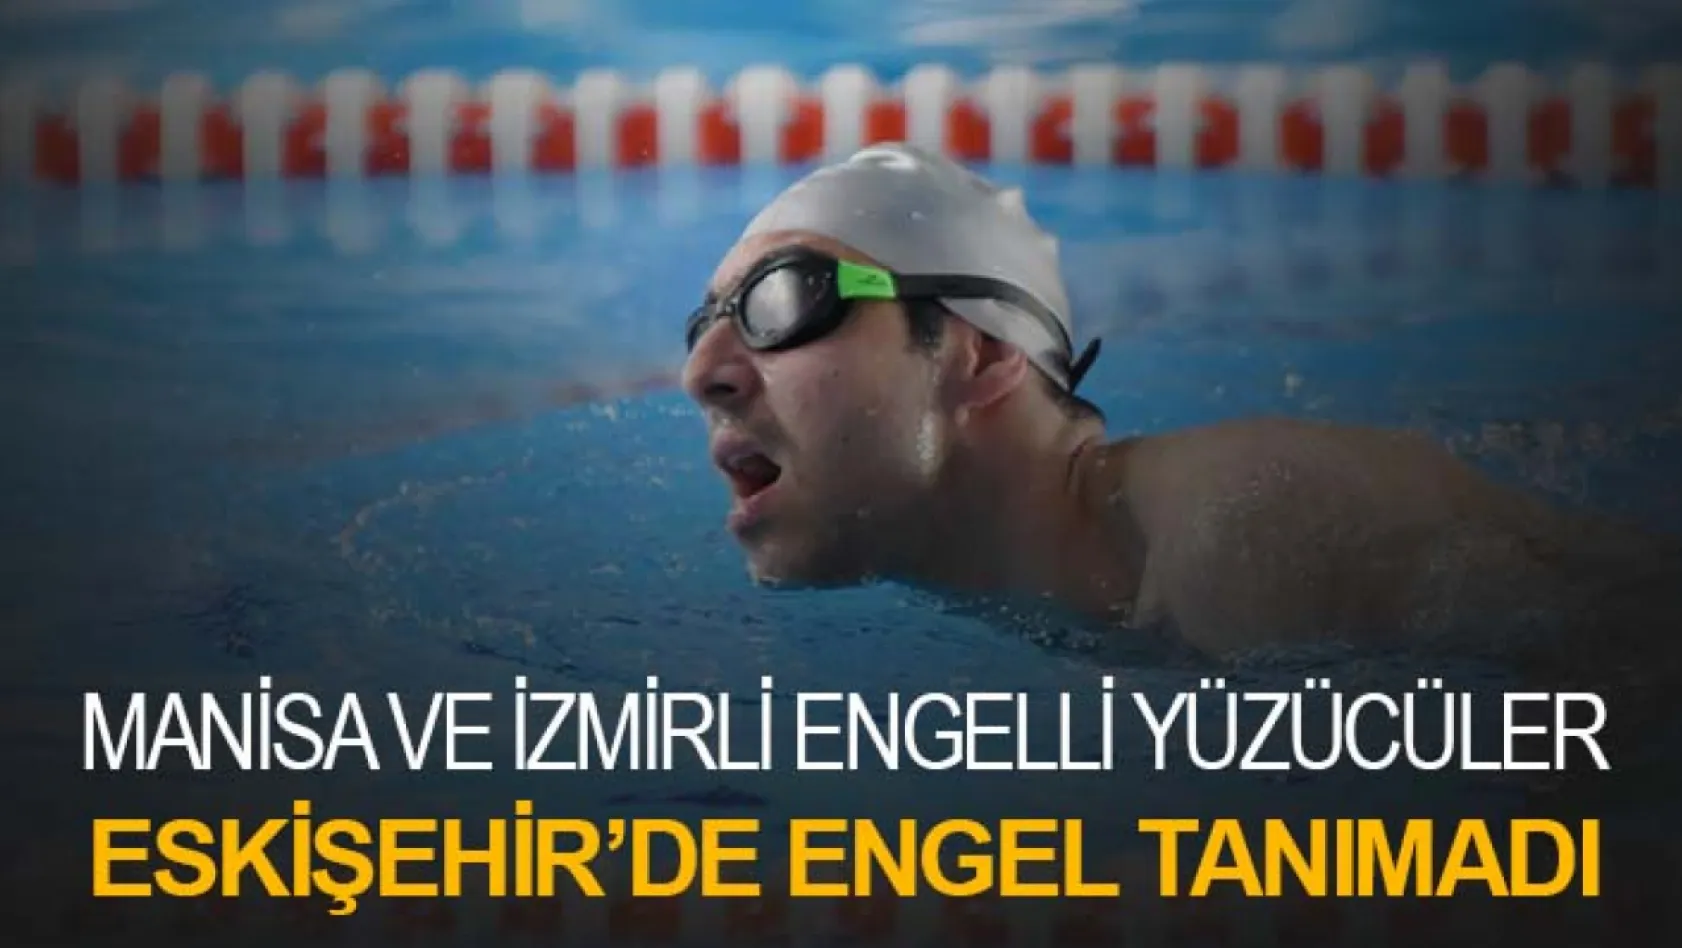 Manisa Ve İzmirli Engelli Yüzücüler Eskişehir'de Engel Tanımadı